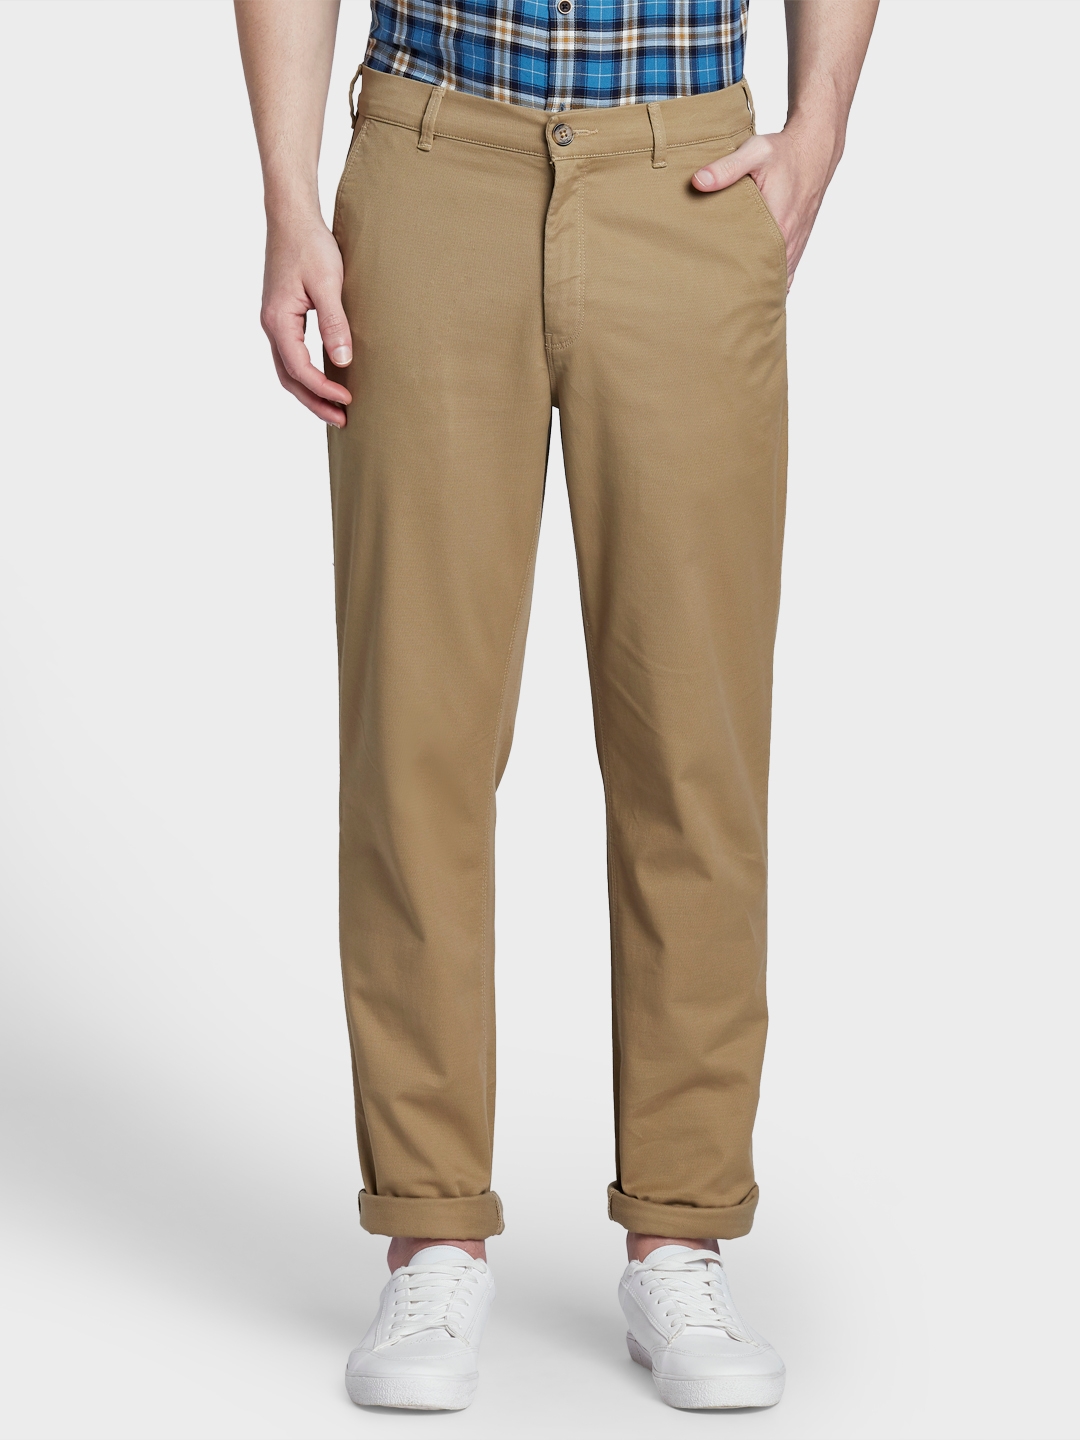 Colorplus Medium Khaki Trouser